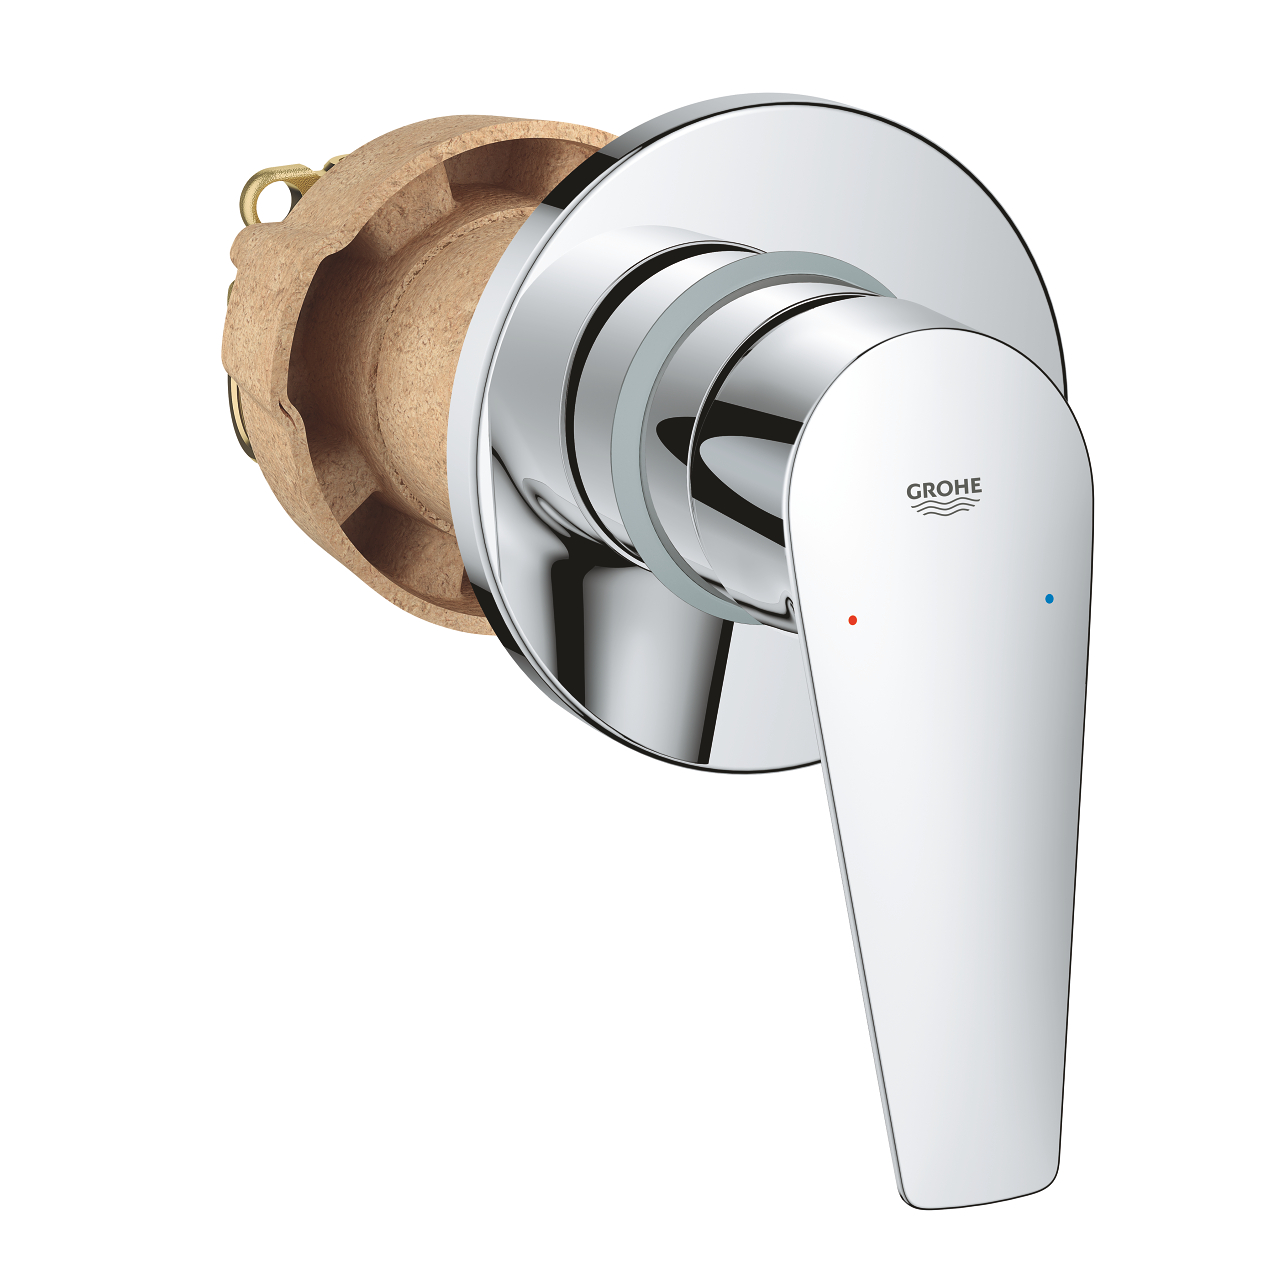 شیر توالت توکار GROHE مدل New Bauedge کد 29040001